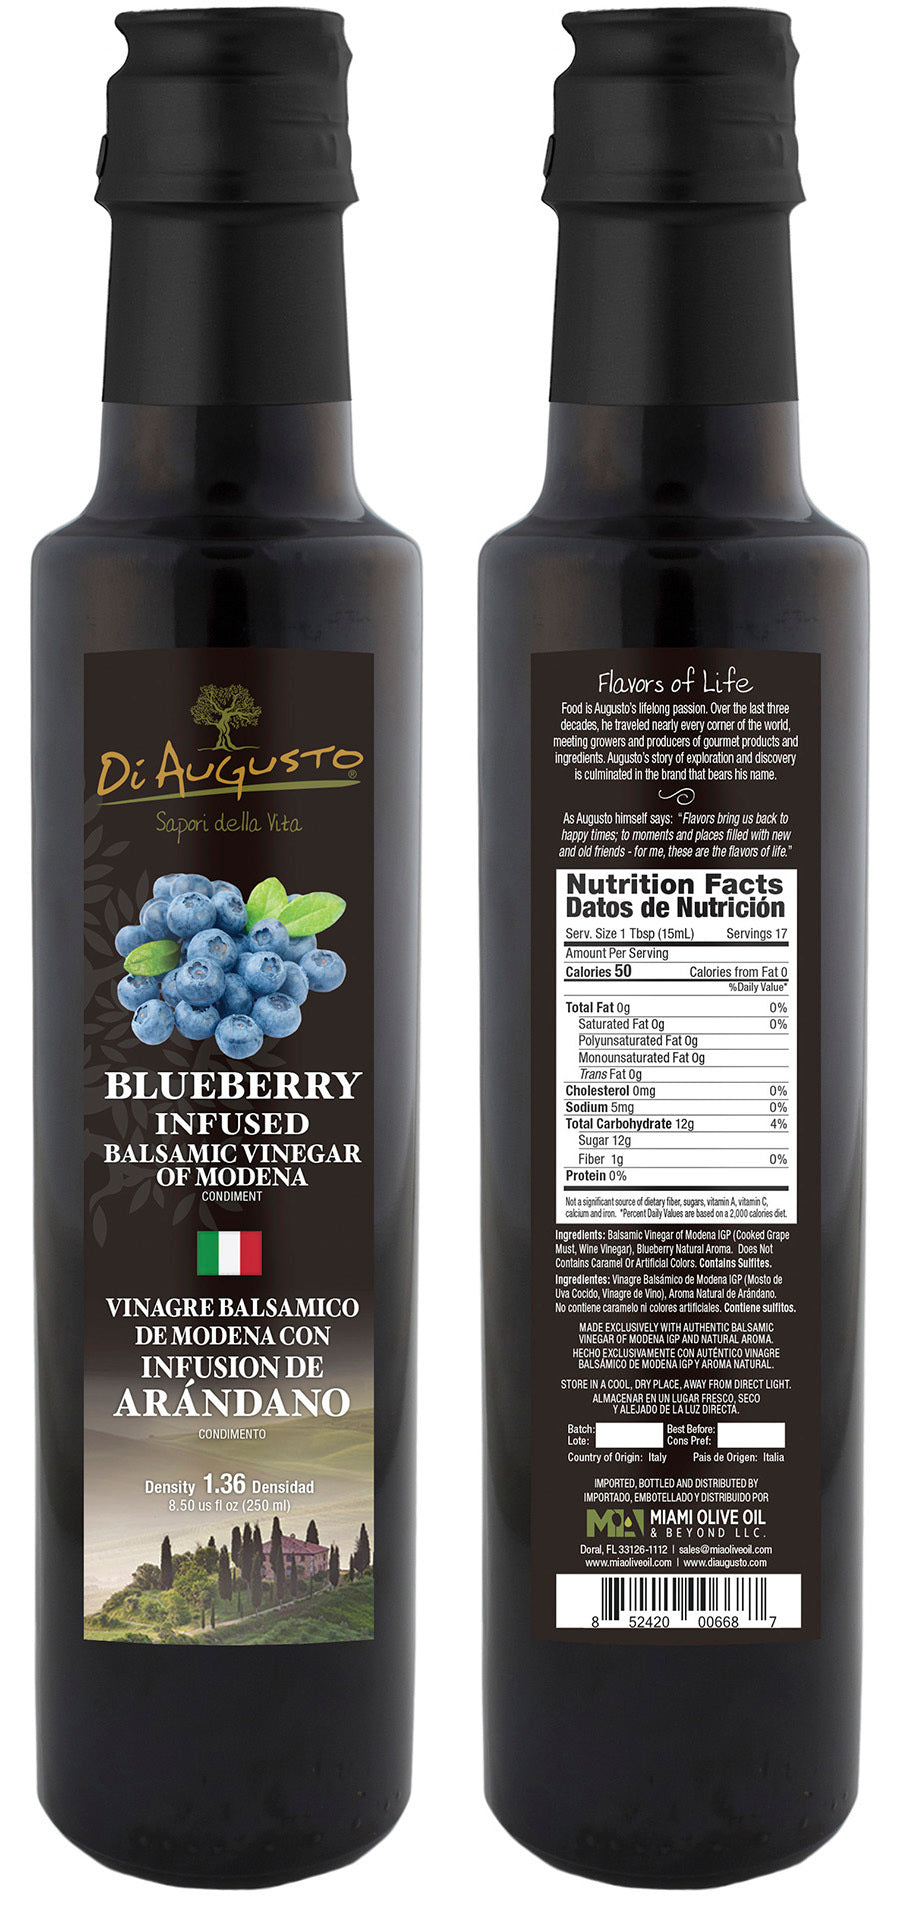 Blueberry Infused Balsamic Vinegar of Modena PGI